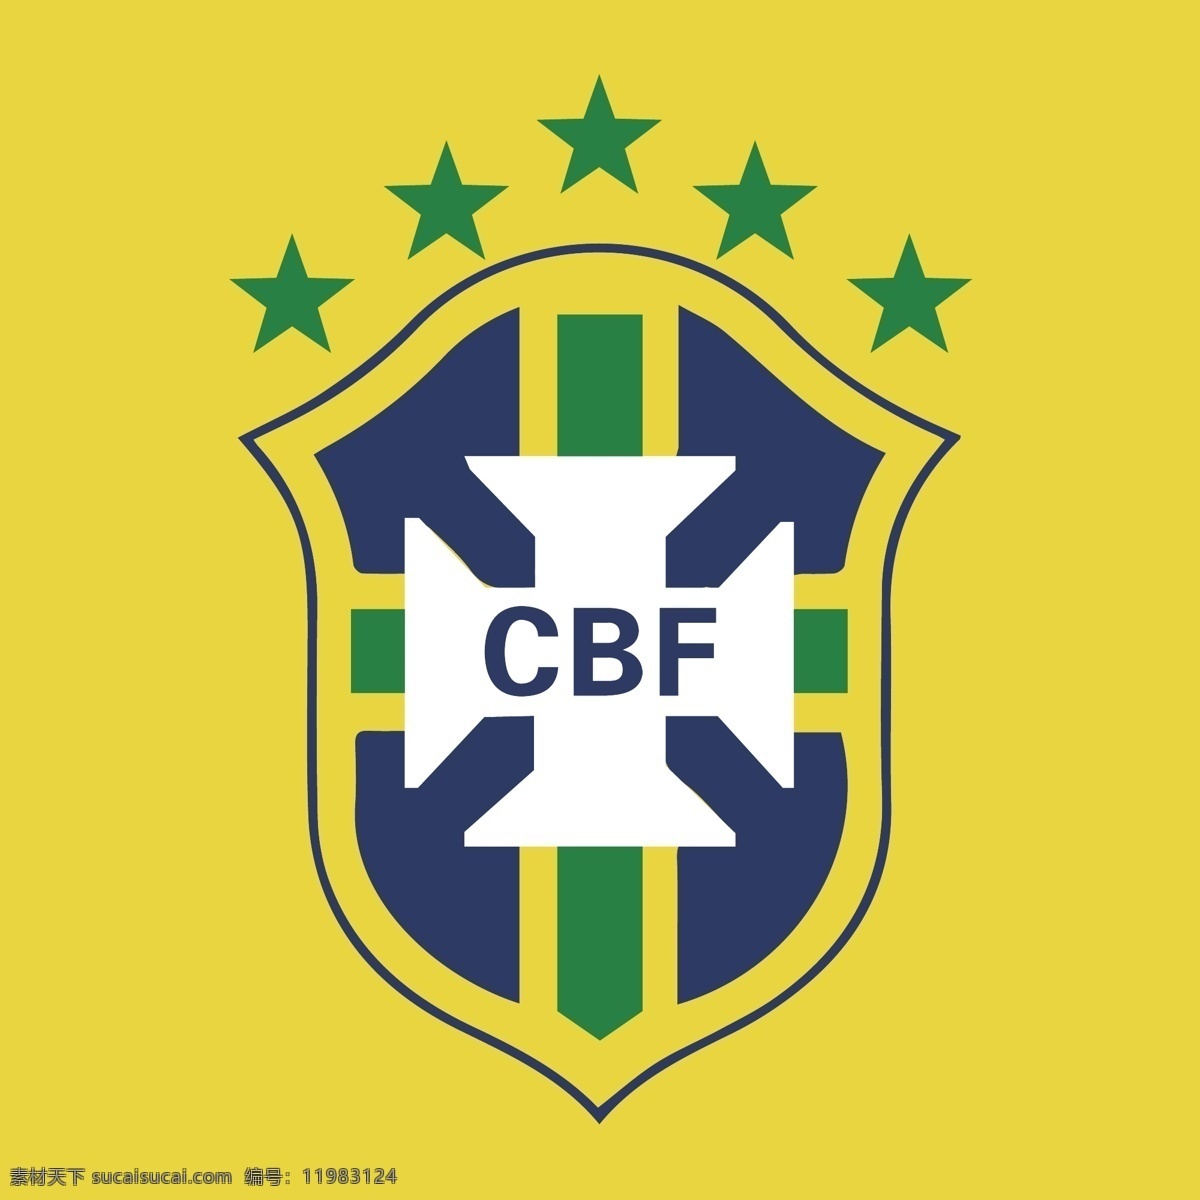 巴西队标志 巴西 南美 足球 世界杯 2014 罗纳尔多 内马尔 运动 标志 cbf 足球标志 logo设计